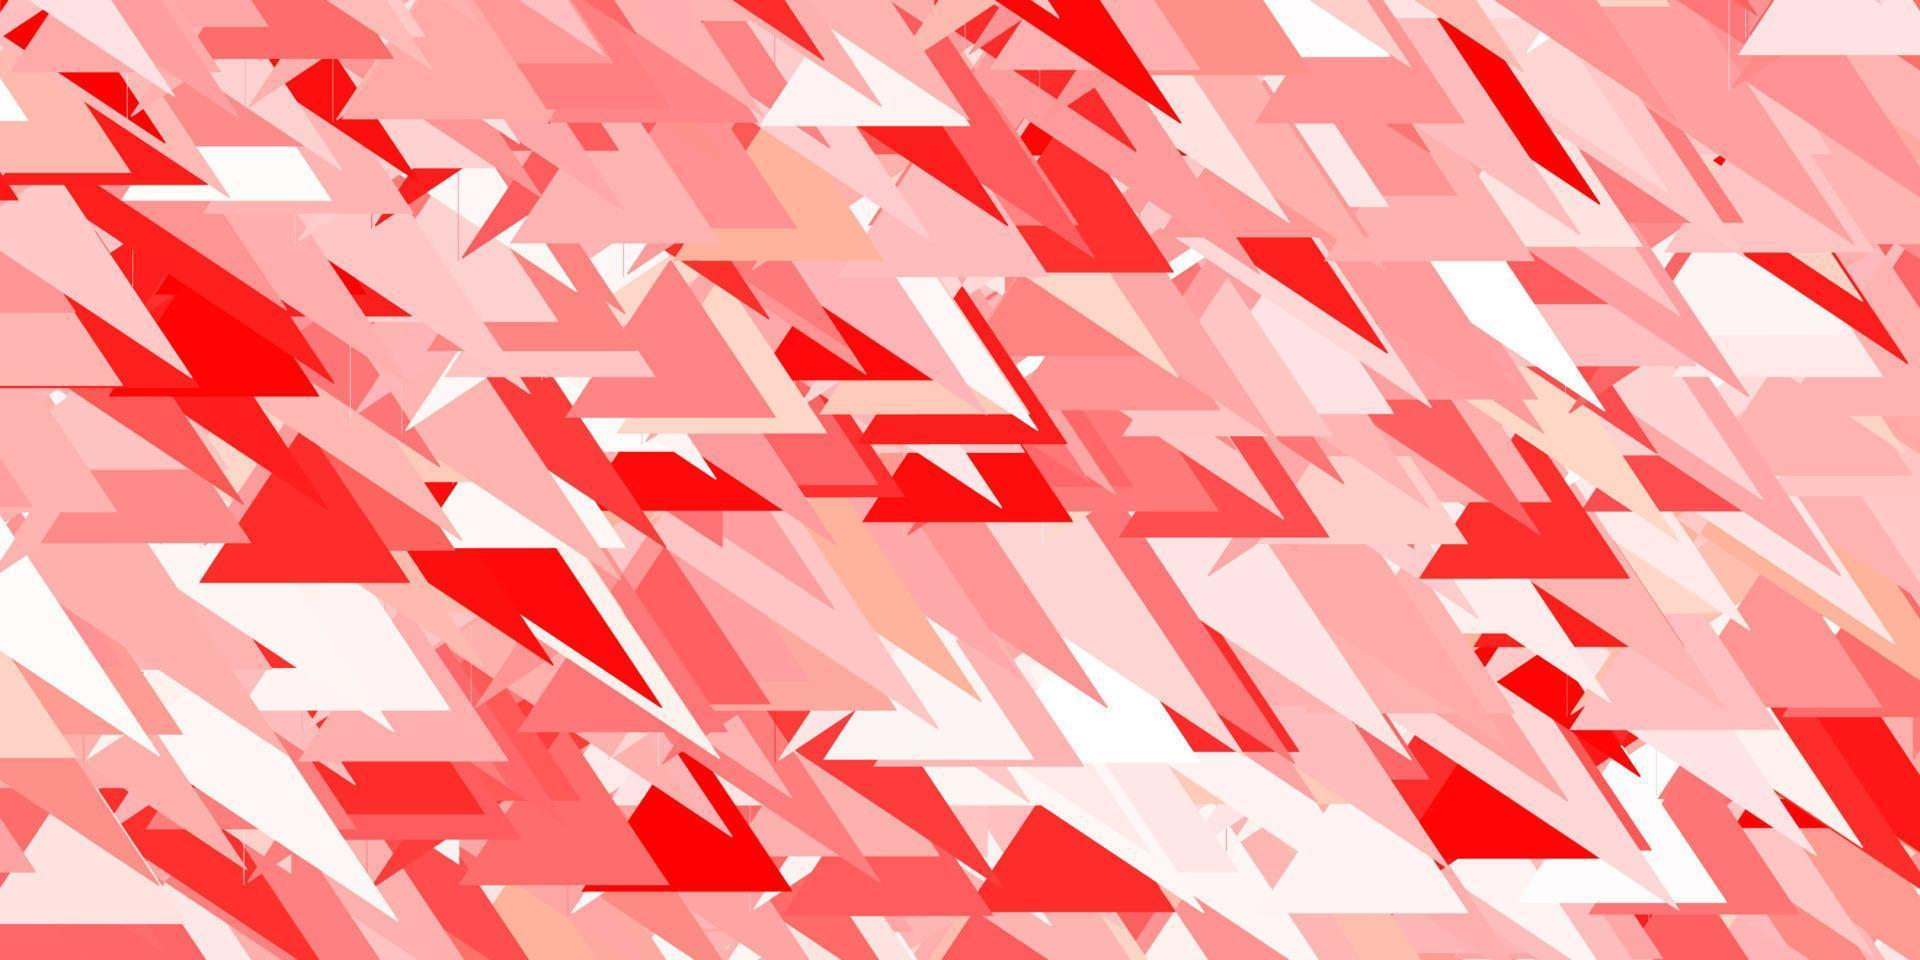 plantilla de vector rojo claro con formas triangulares.